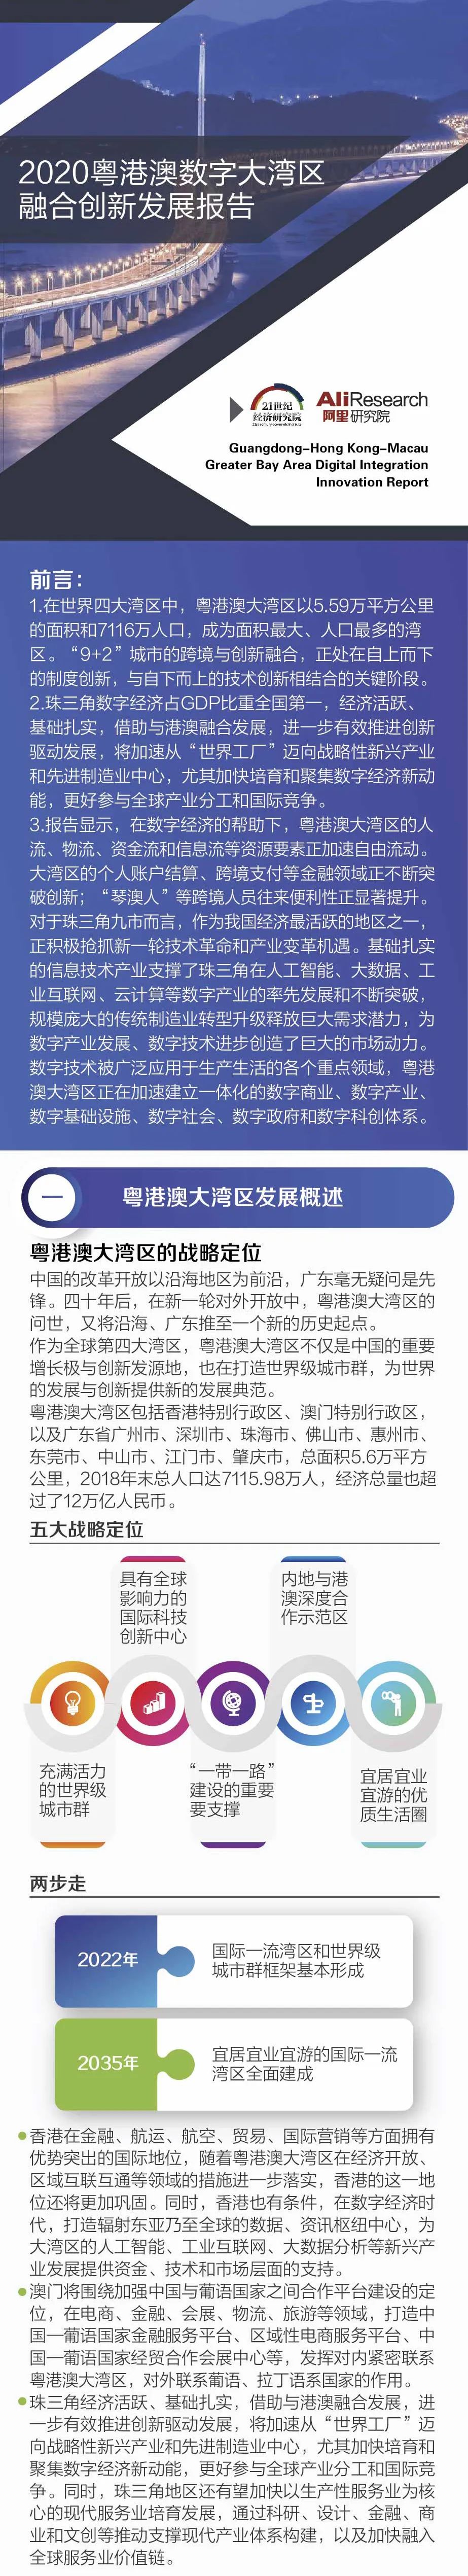 《2020粤港澳数字大湾区融合创新发展报告》